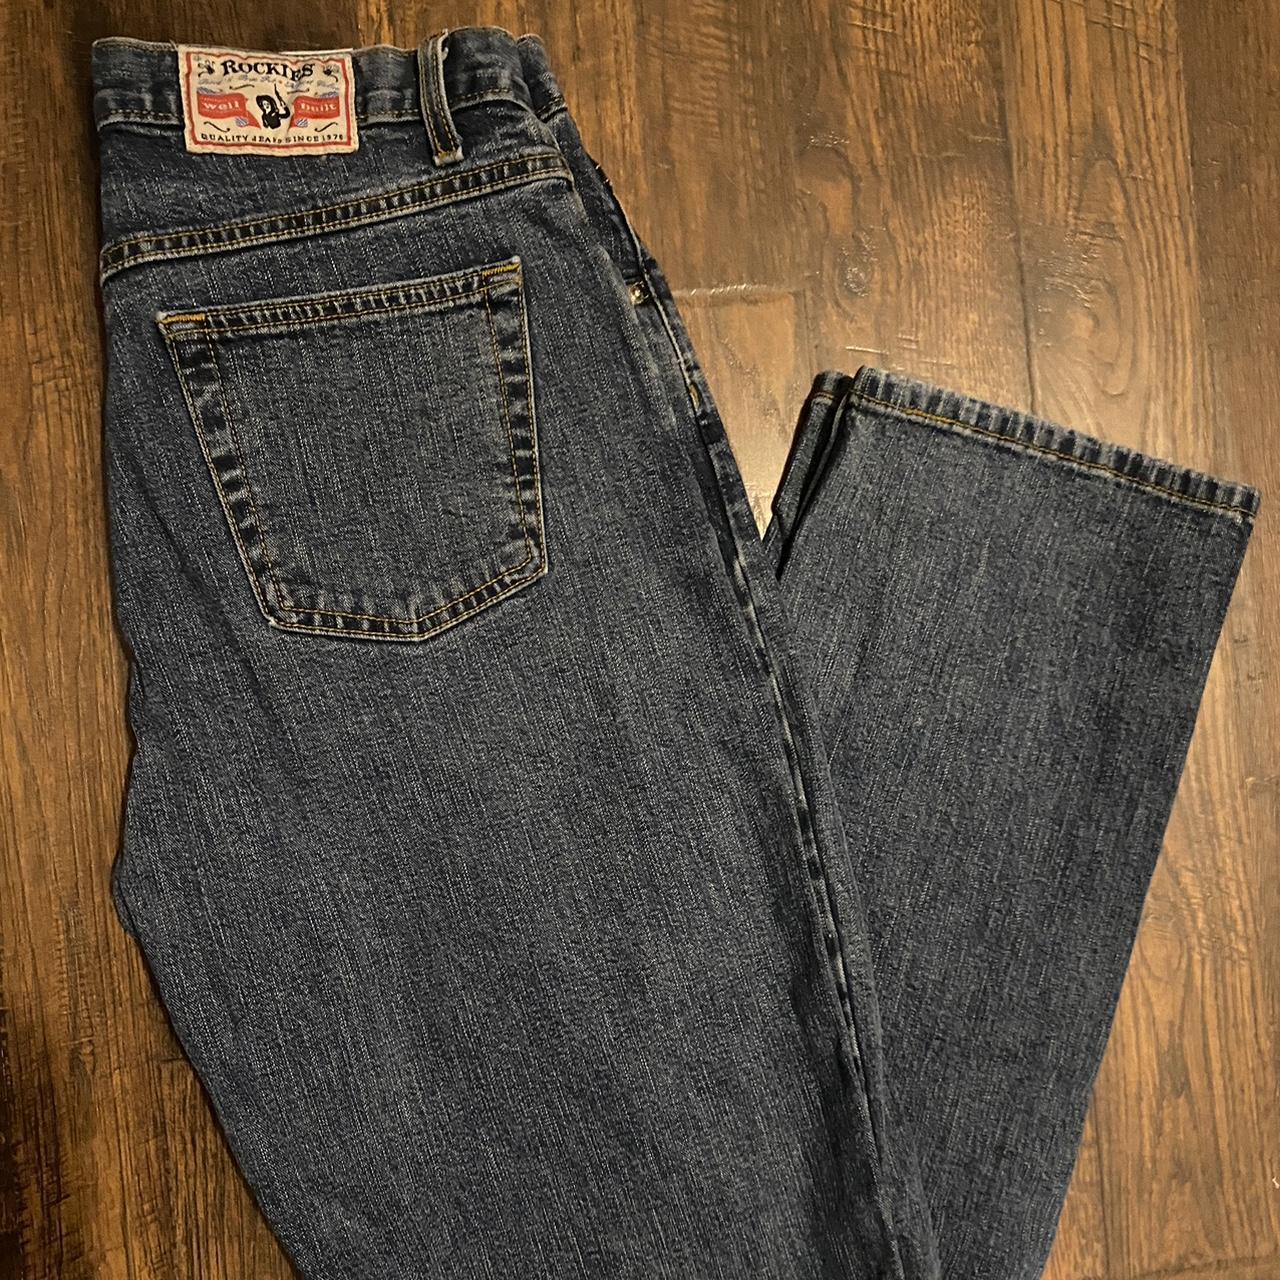 Vintage 90s Rockies Western Dark Wash Jeans